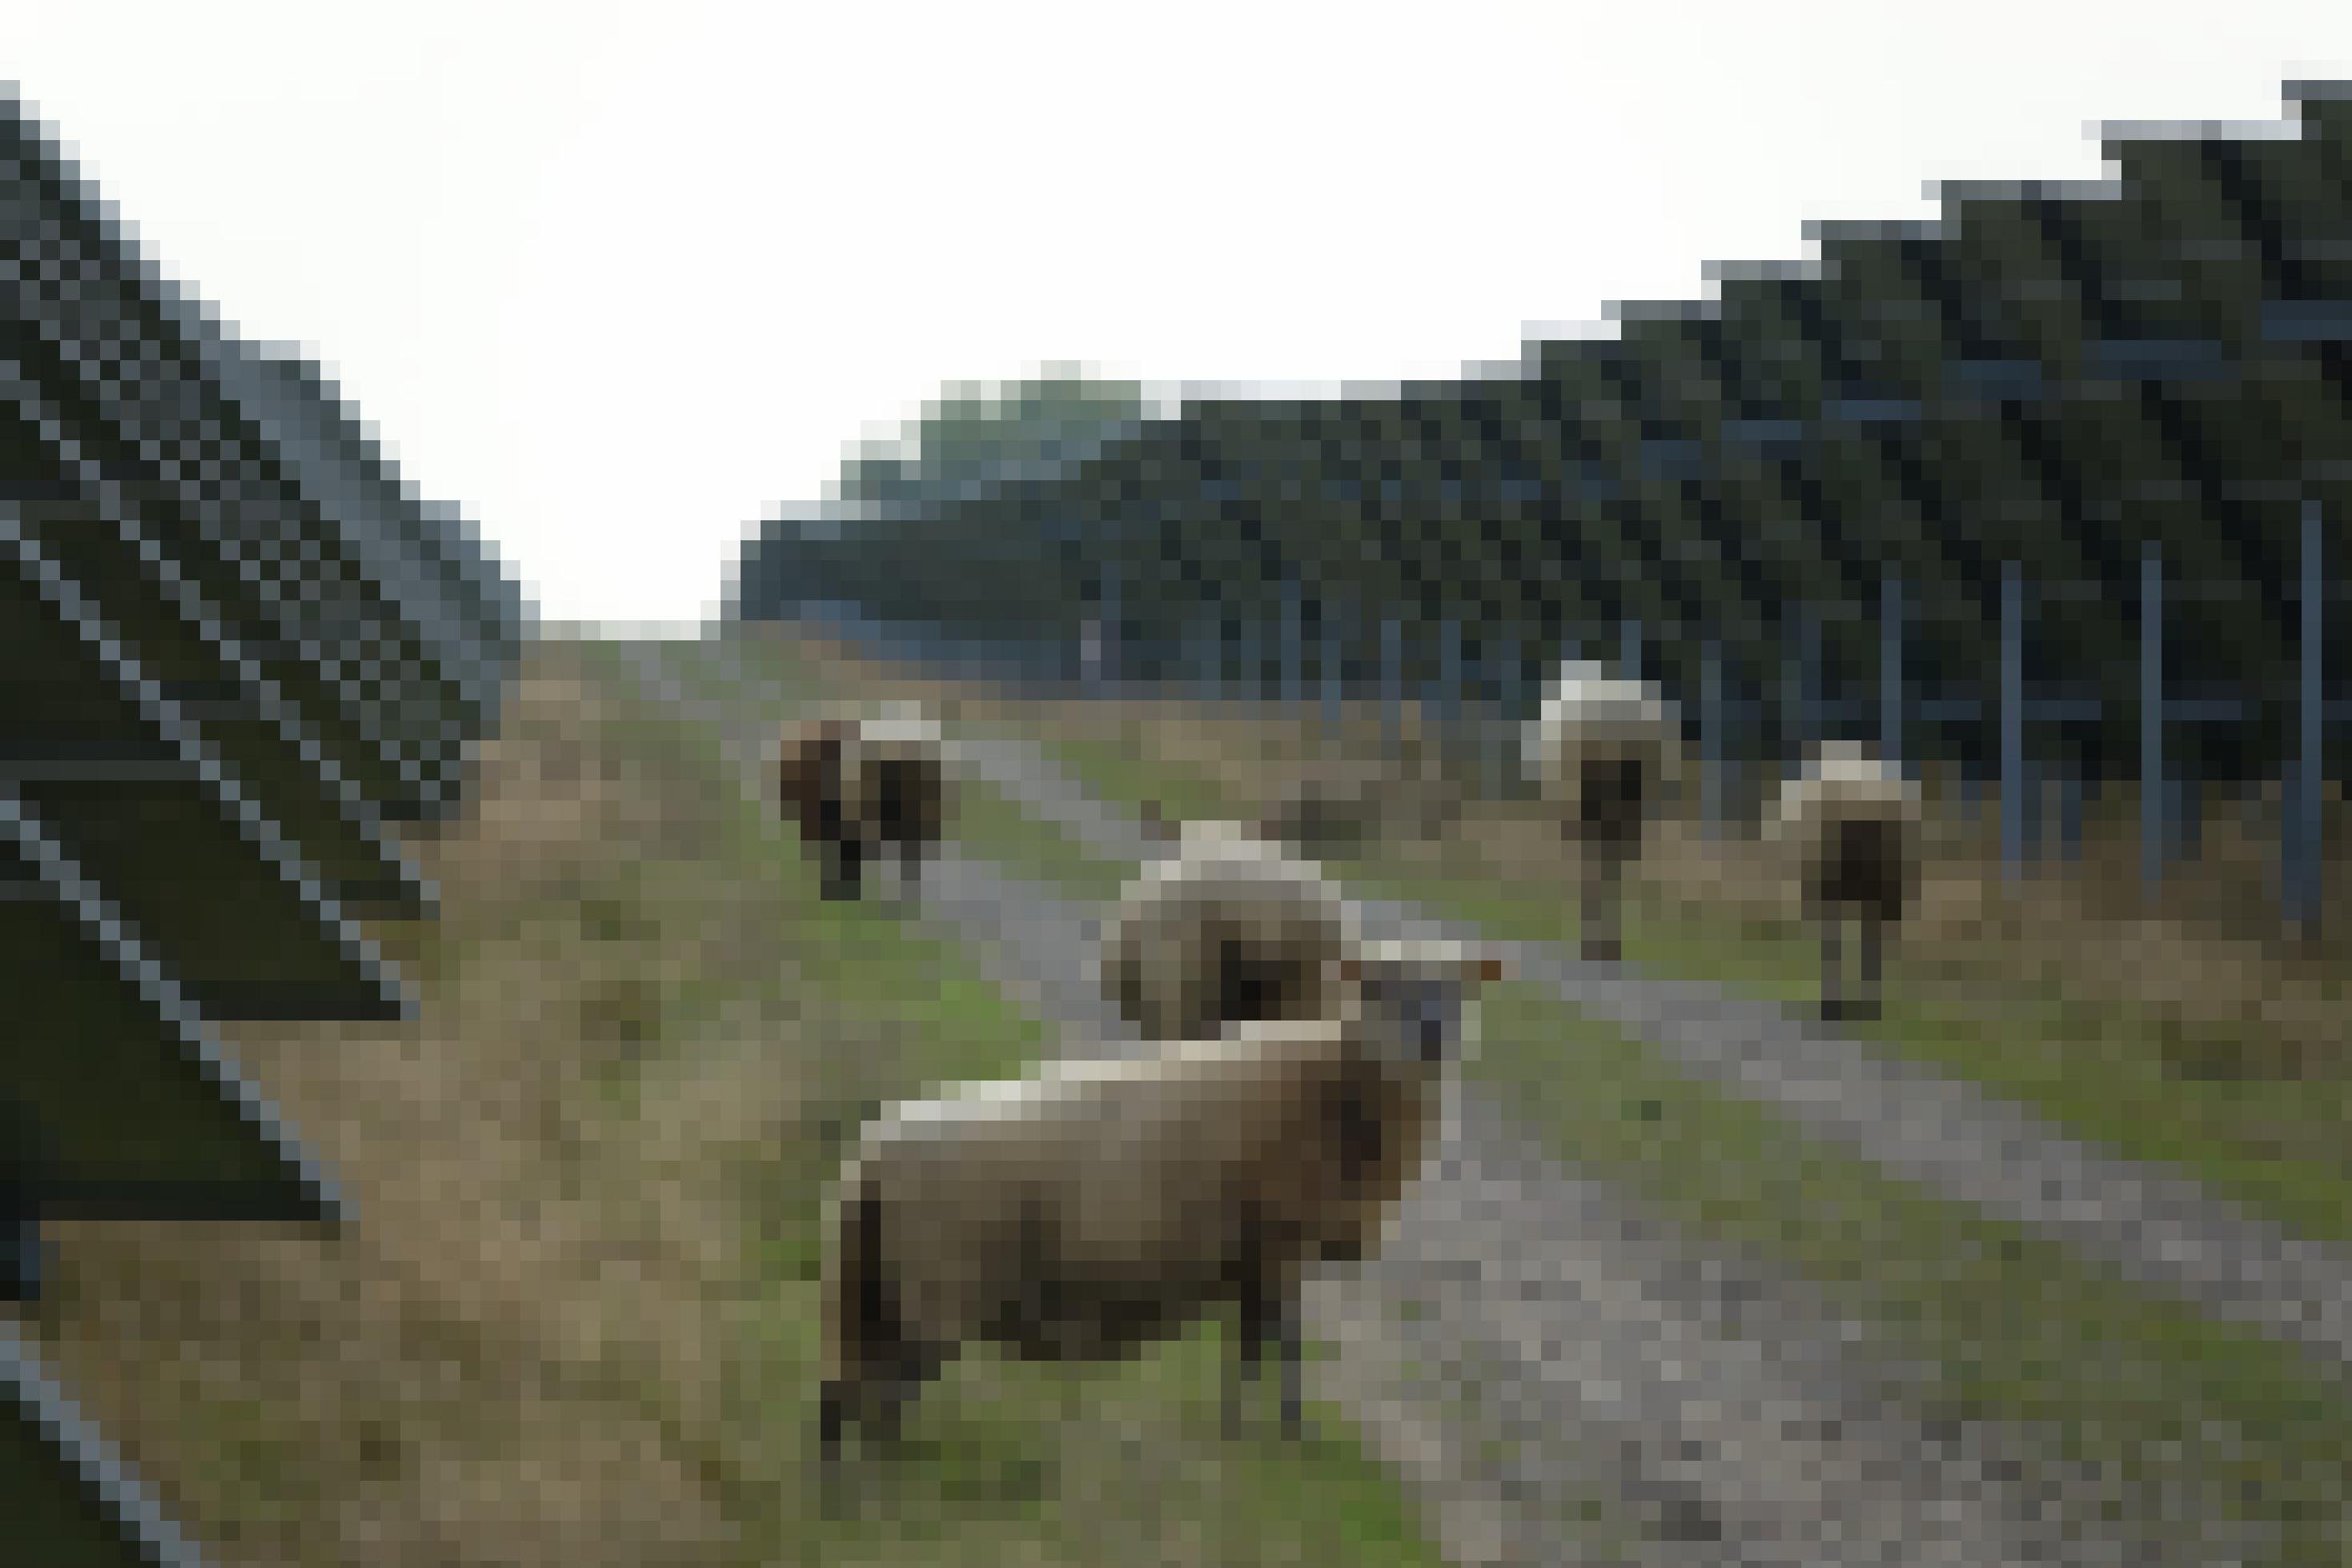 Schafe trotten auf einem Weg, der zwischen einer langen Reihe von Solarmodulen verläuft.